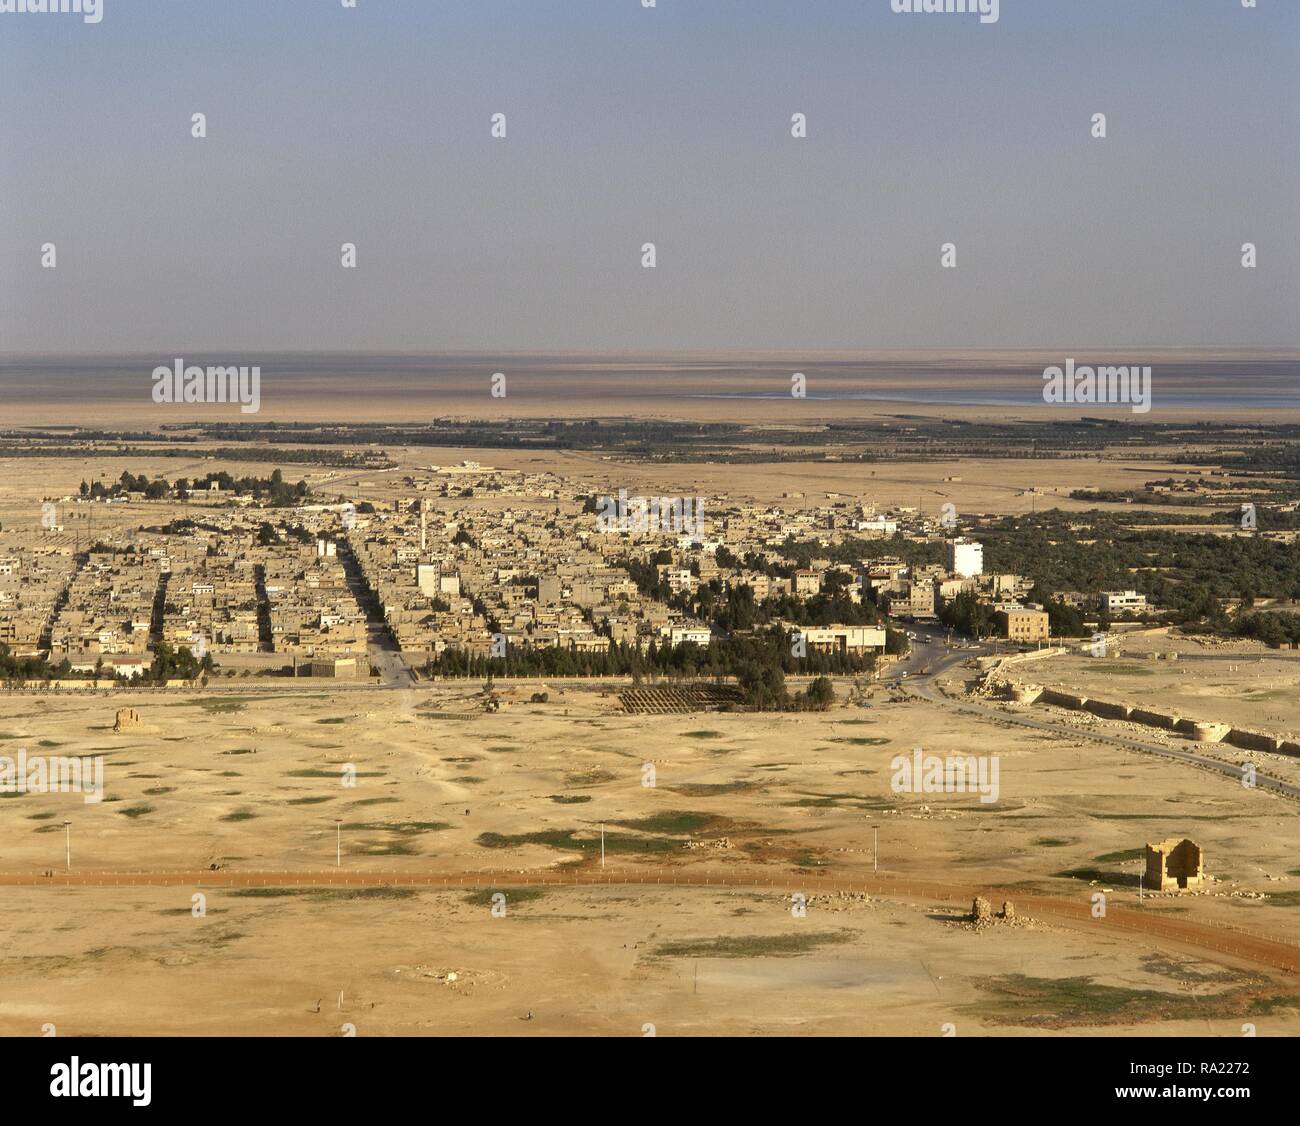 Arabische Republik Syrien. Tadmur, in der Nähe von antiken Palmyra/Tadmor. Panoramablick auf die Landschaft. Foto vor dem syrischen Bürgerkrieg. Stockfoto